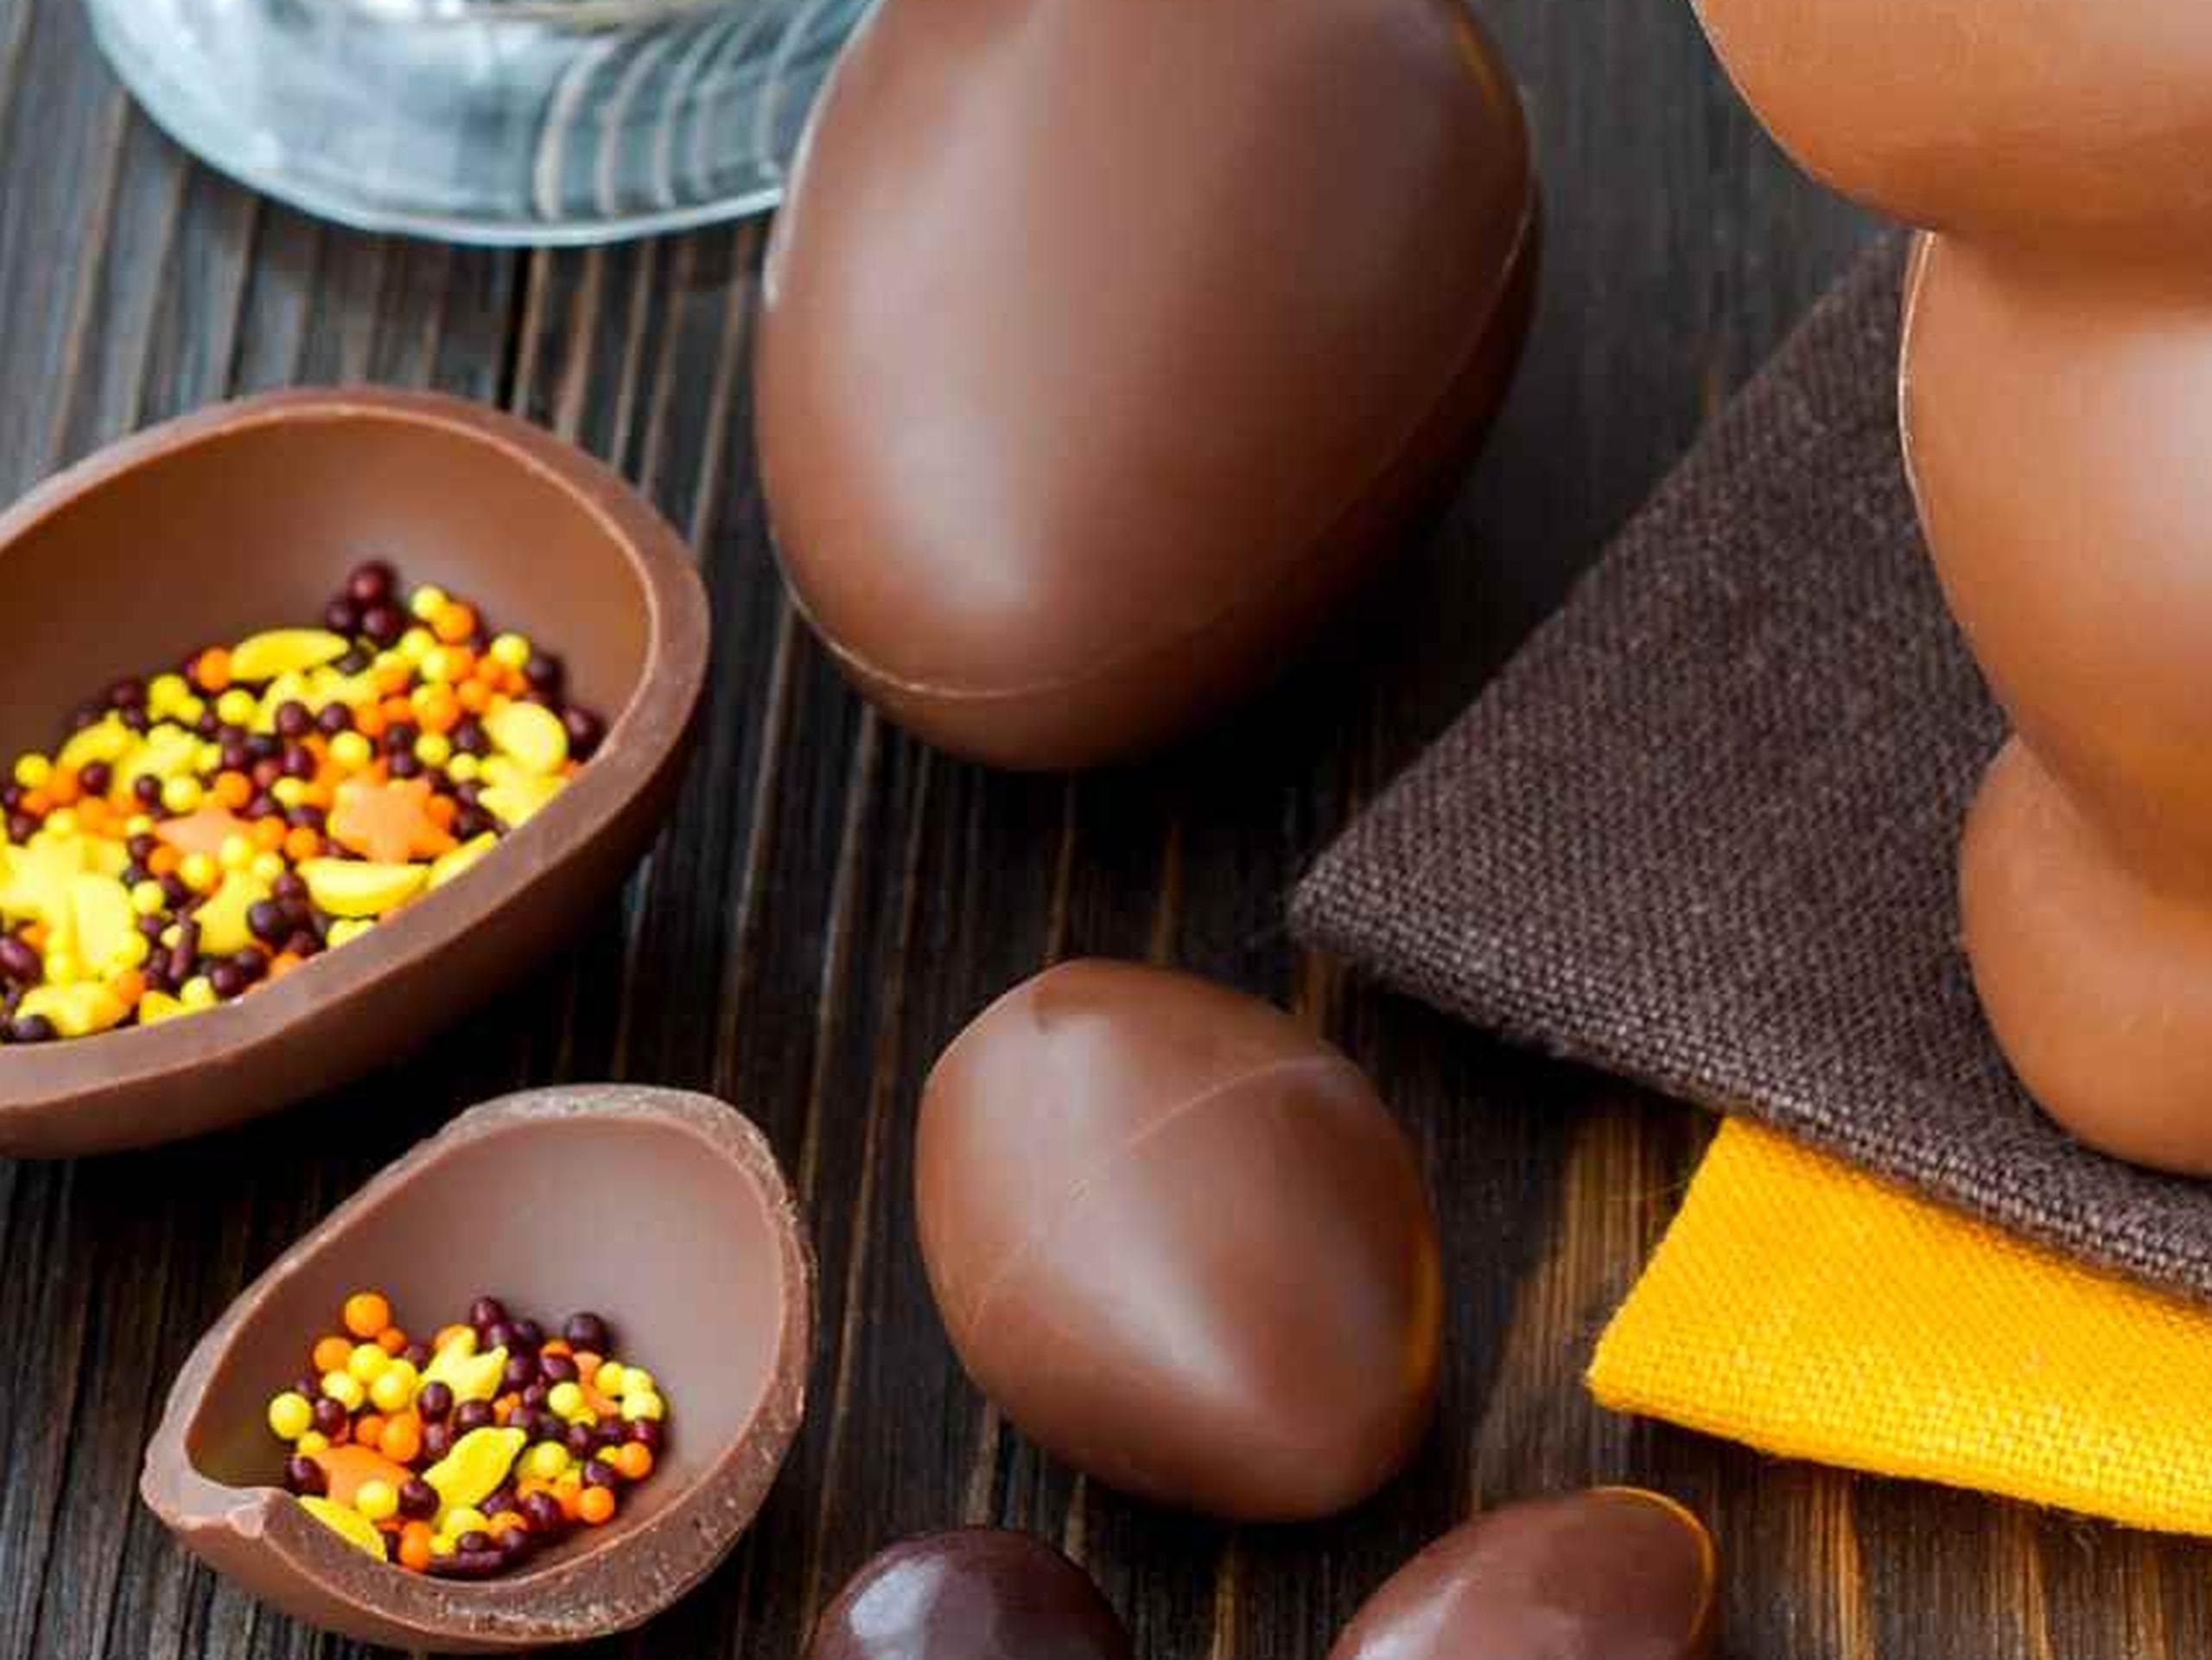 Peña aconseja preferir los chocolates con alto contenido de cacao natural y evitar los que estén fabricados con sucedáneos del chocolate. (Getty Images)